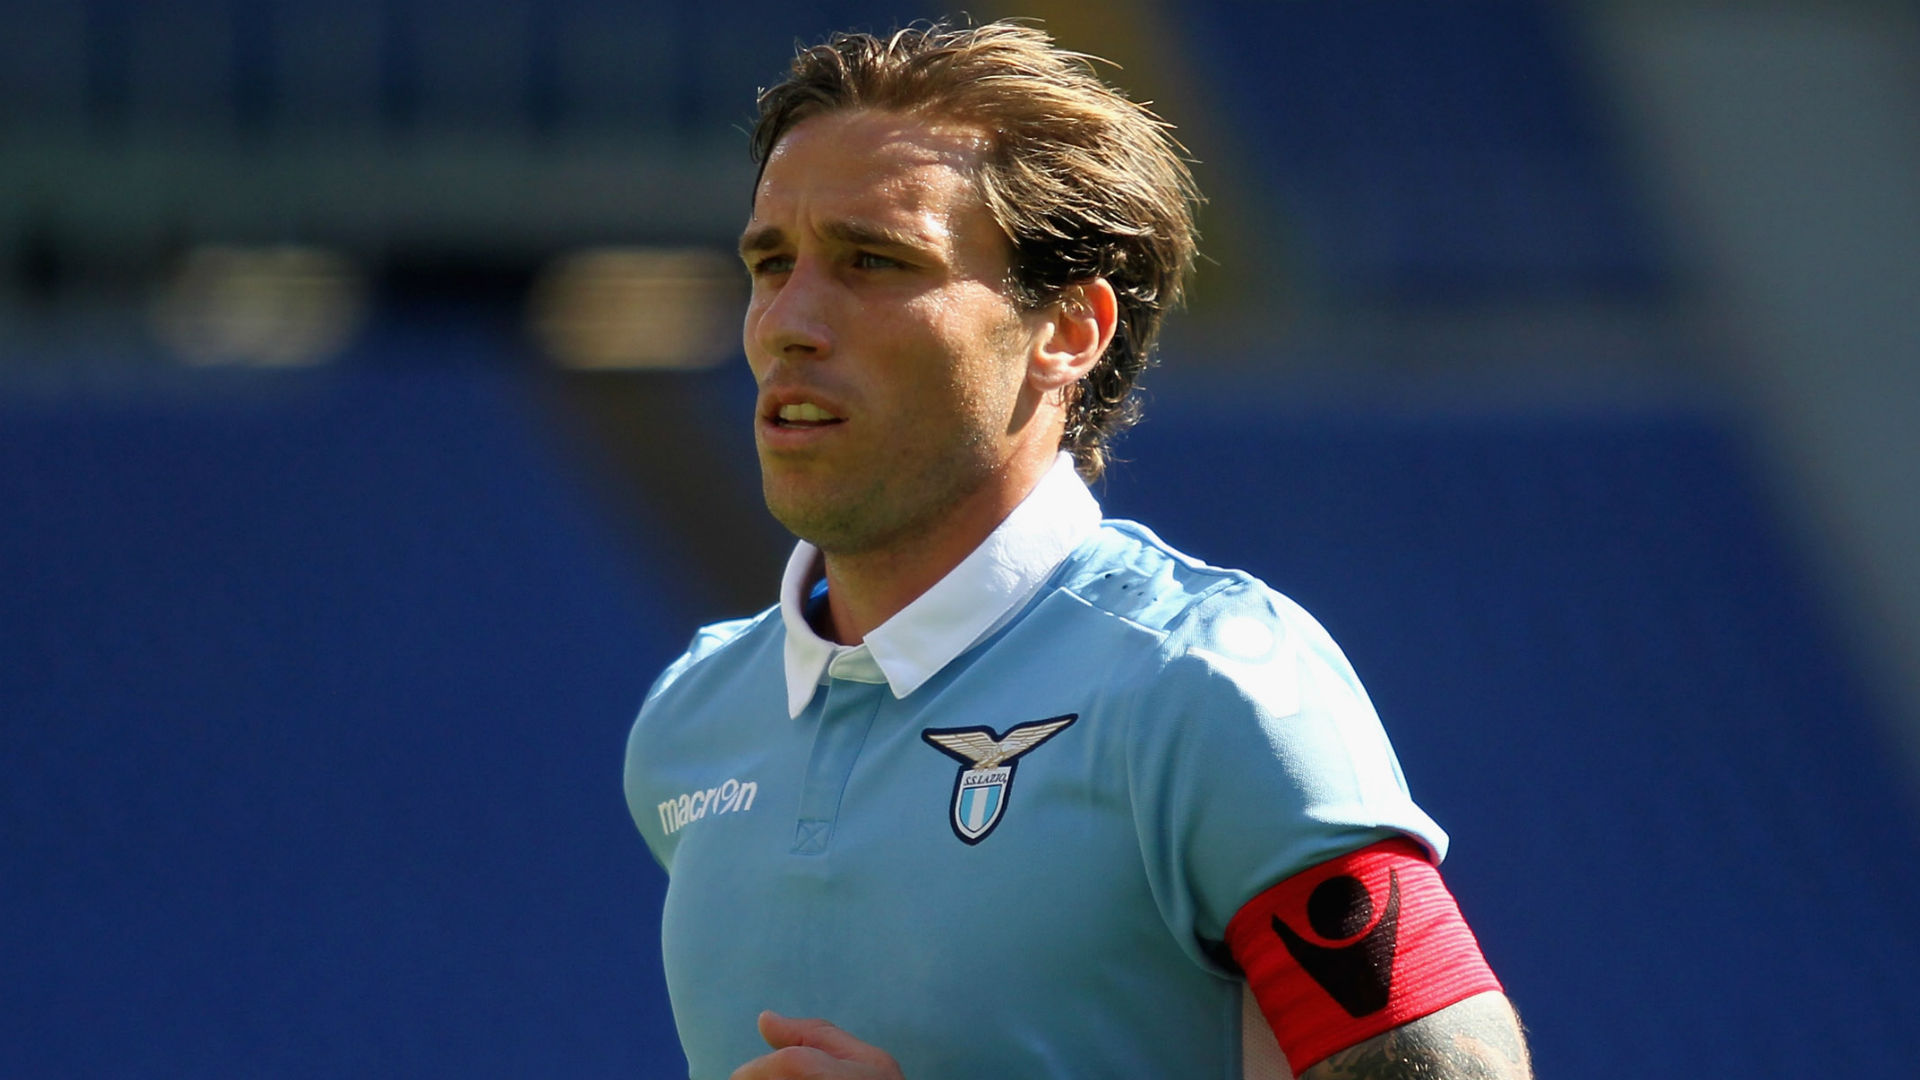 Fabio Borini - Player profile 23/24